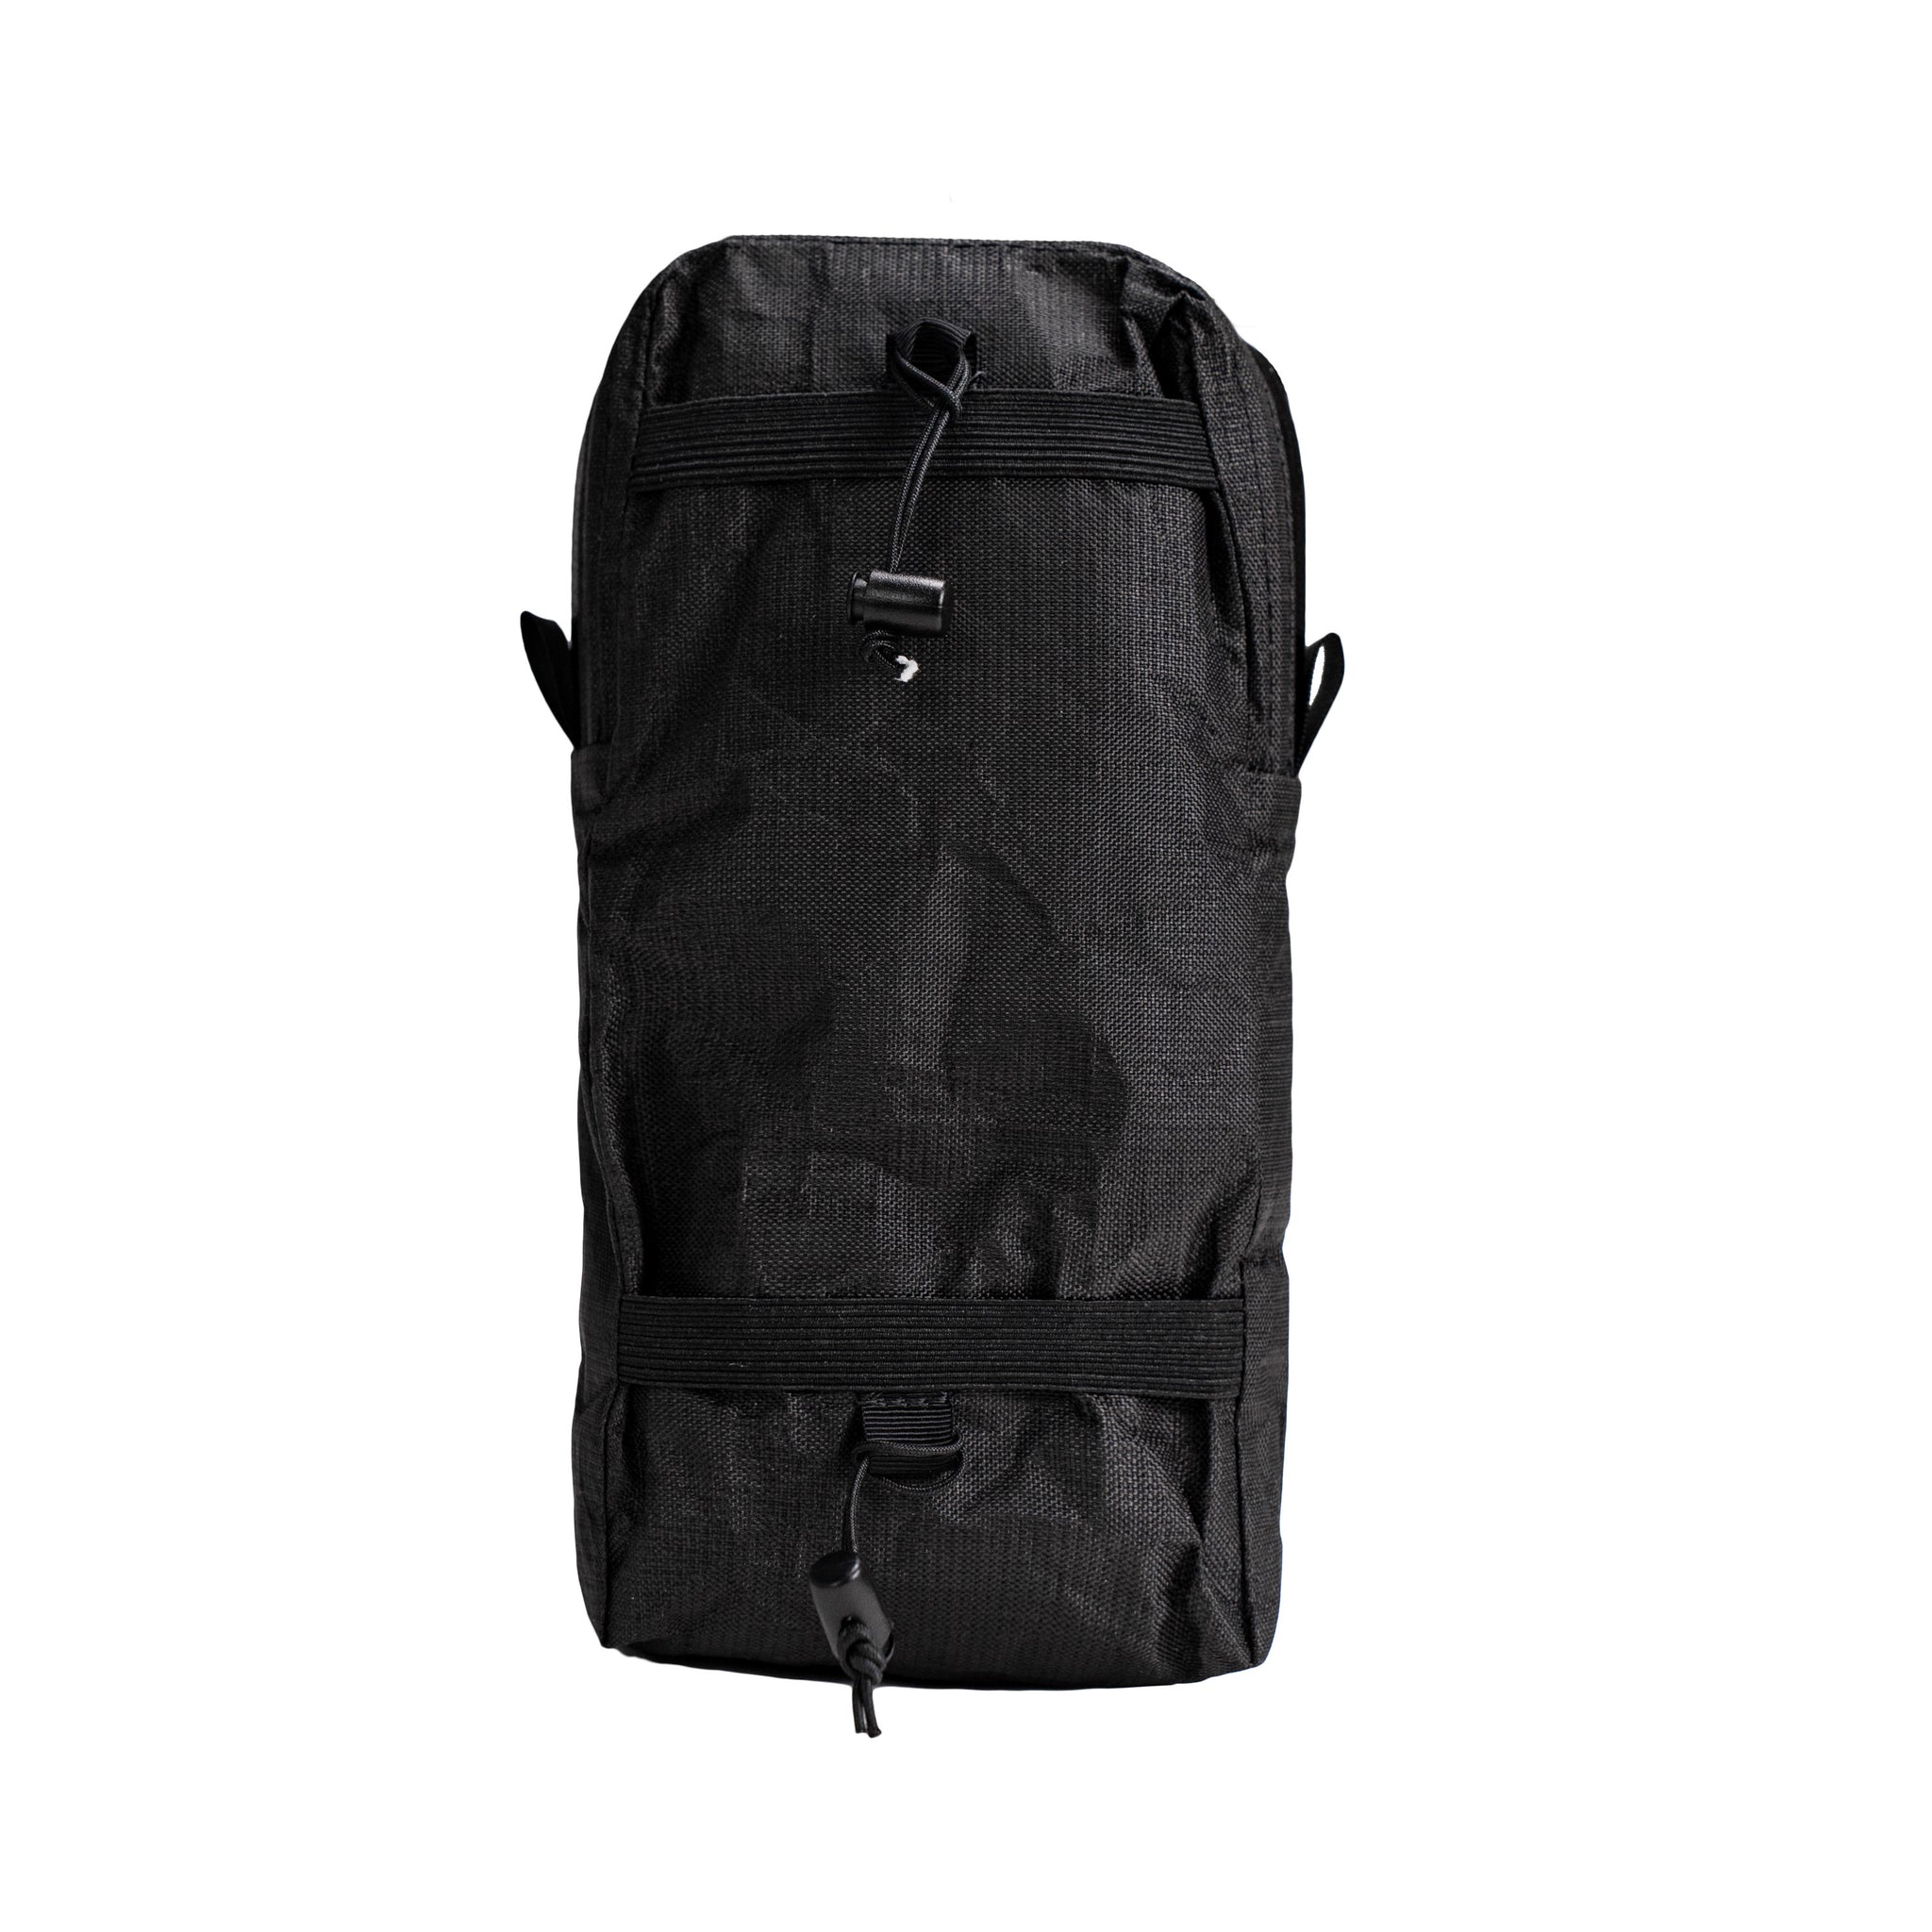 Shoulder Pouches for backpacks – Hilltop Packs LLC